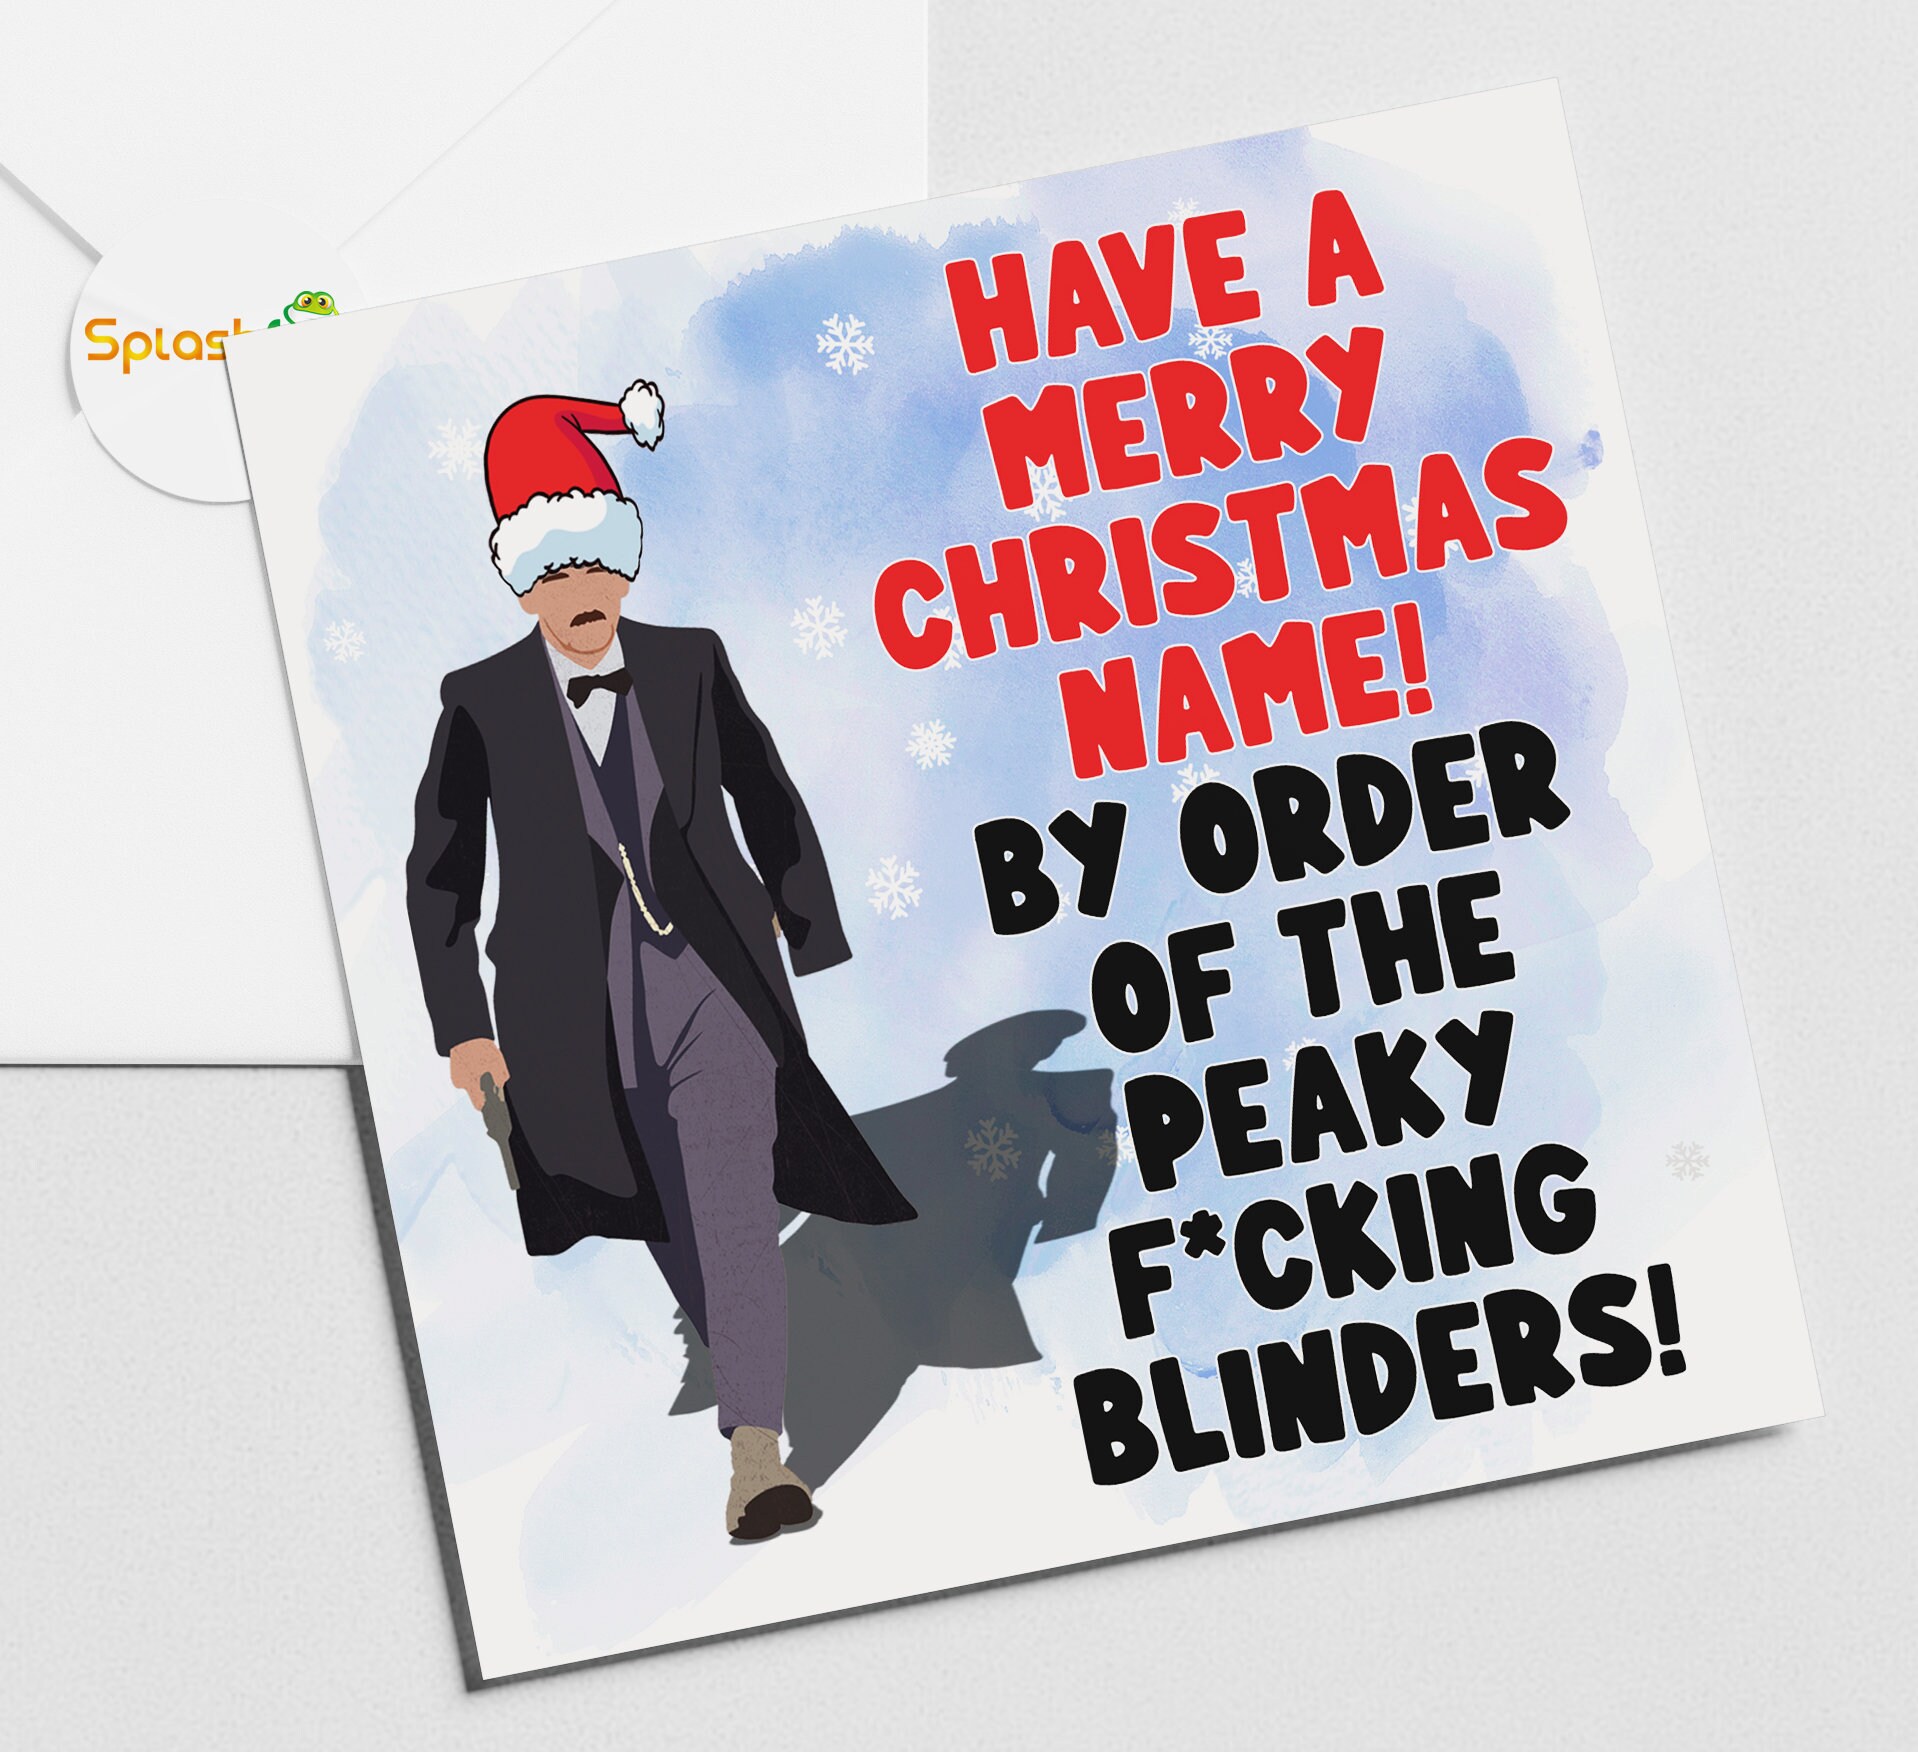 Pin by Edgar on joyeria  Peaky blinders suit, Peaky blinders